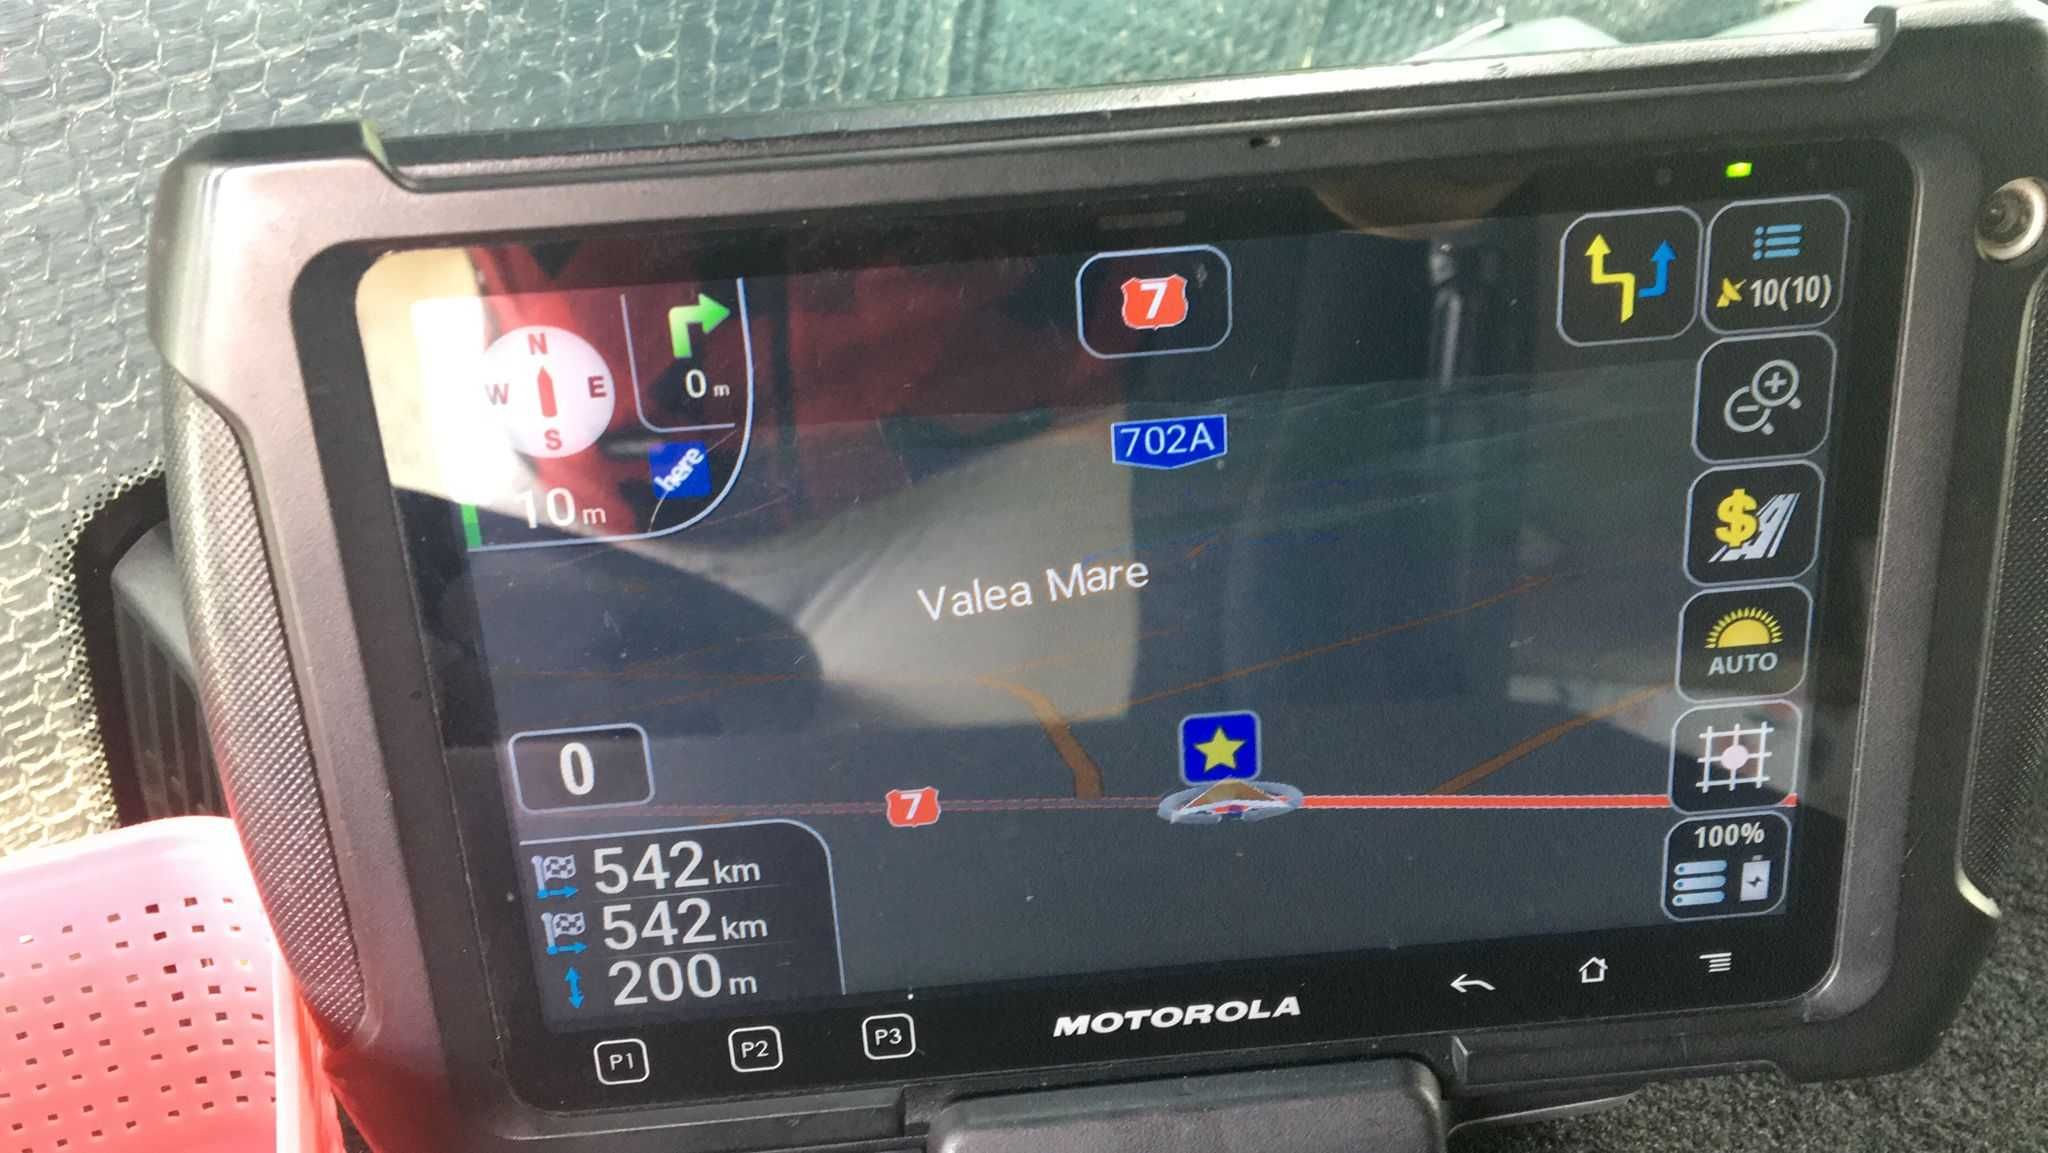 Navigatie Camioane IGO Elite pe tablete Motorola ET1 Enterprise